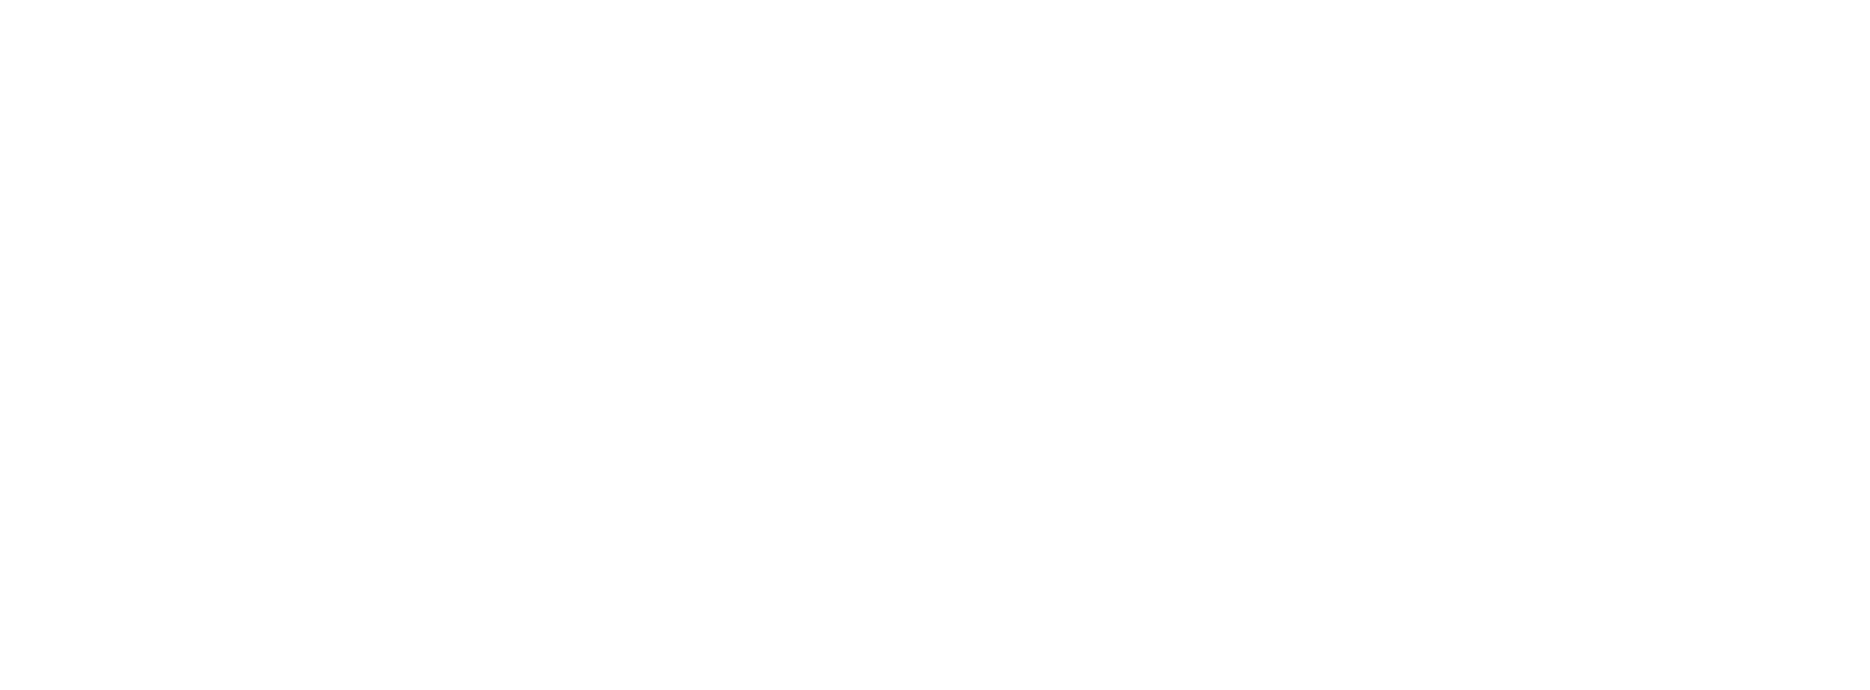 Microsoft logo in white